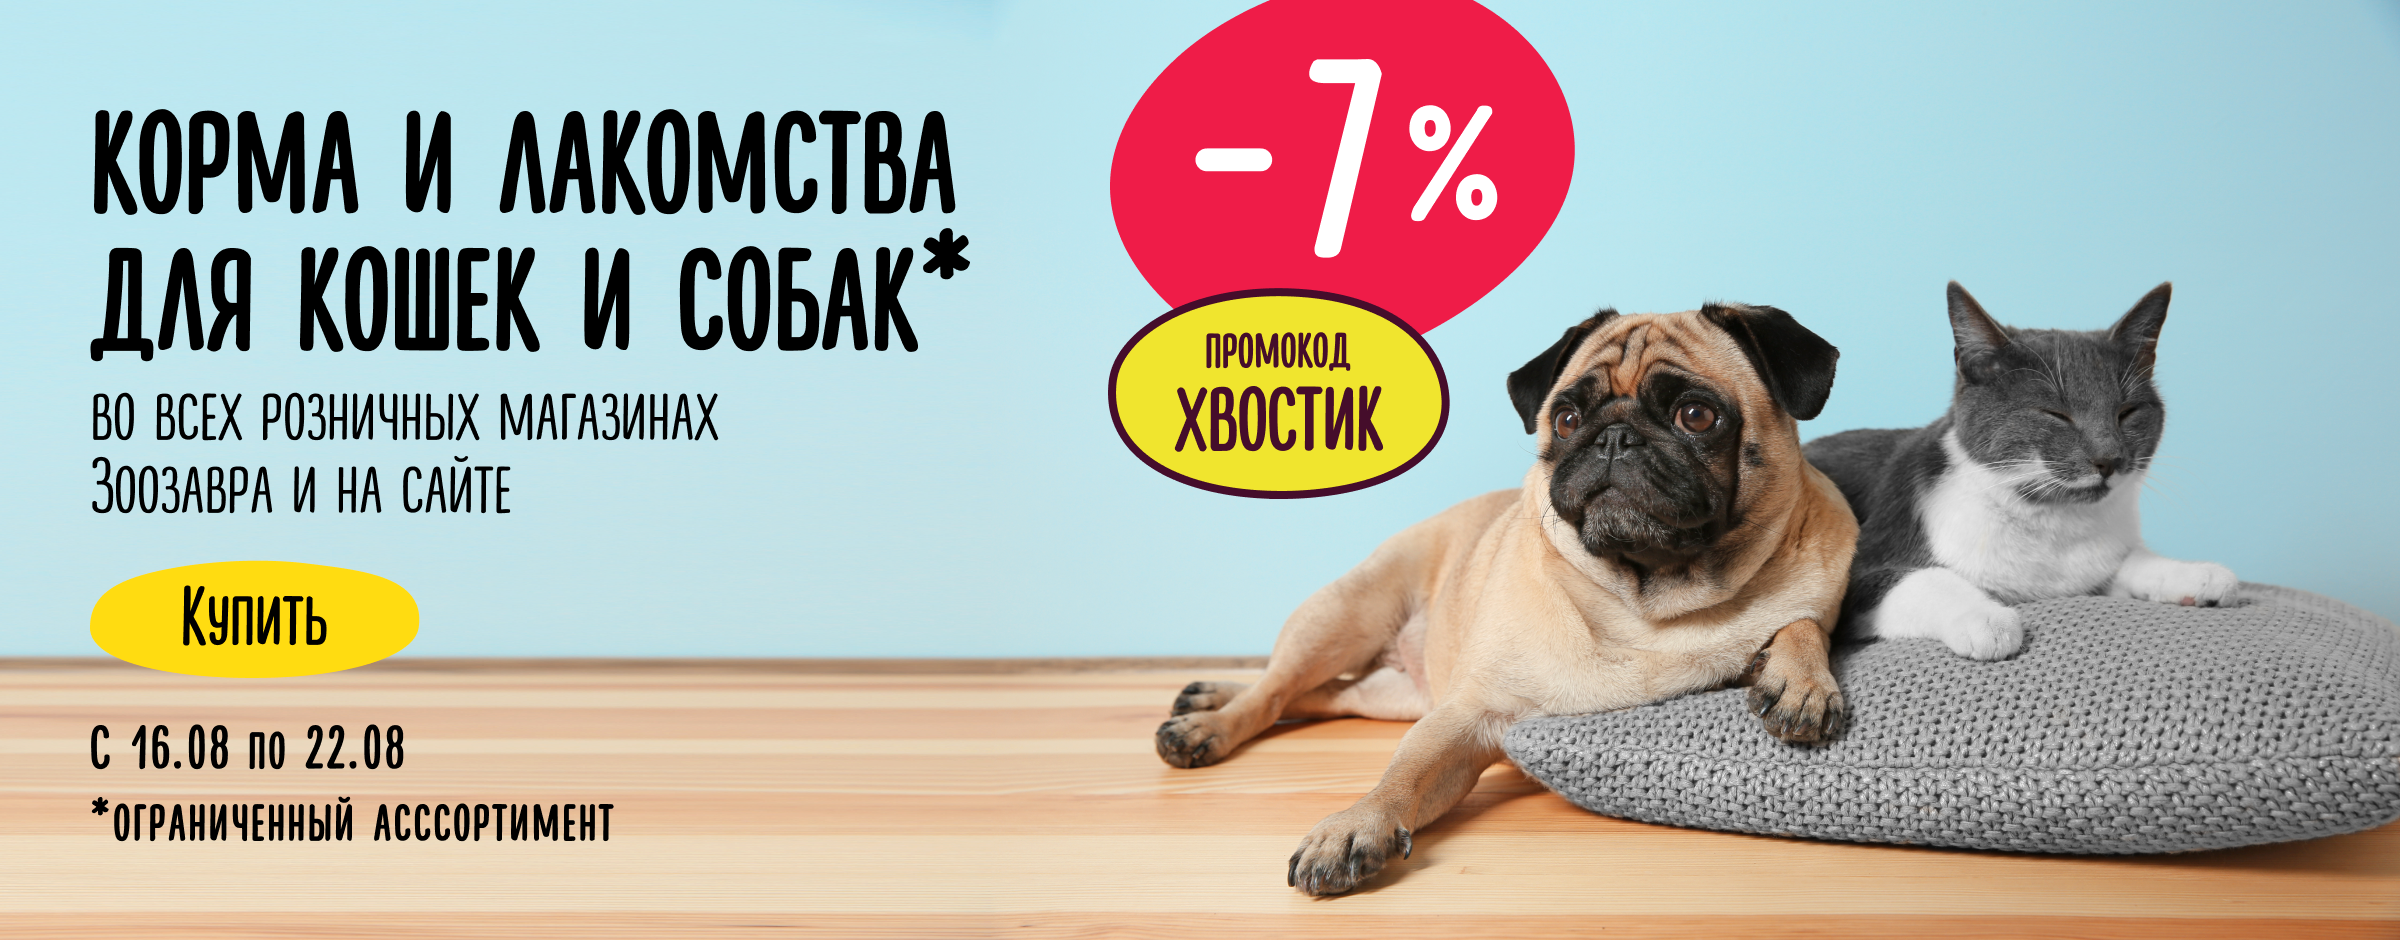 Доп. скидка 7% на корма и лакомства для кошек и собак Хвостик_ статика